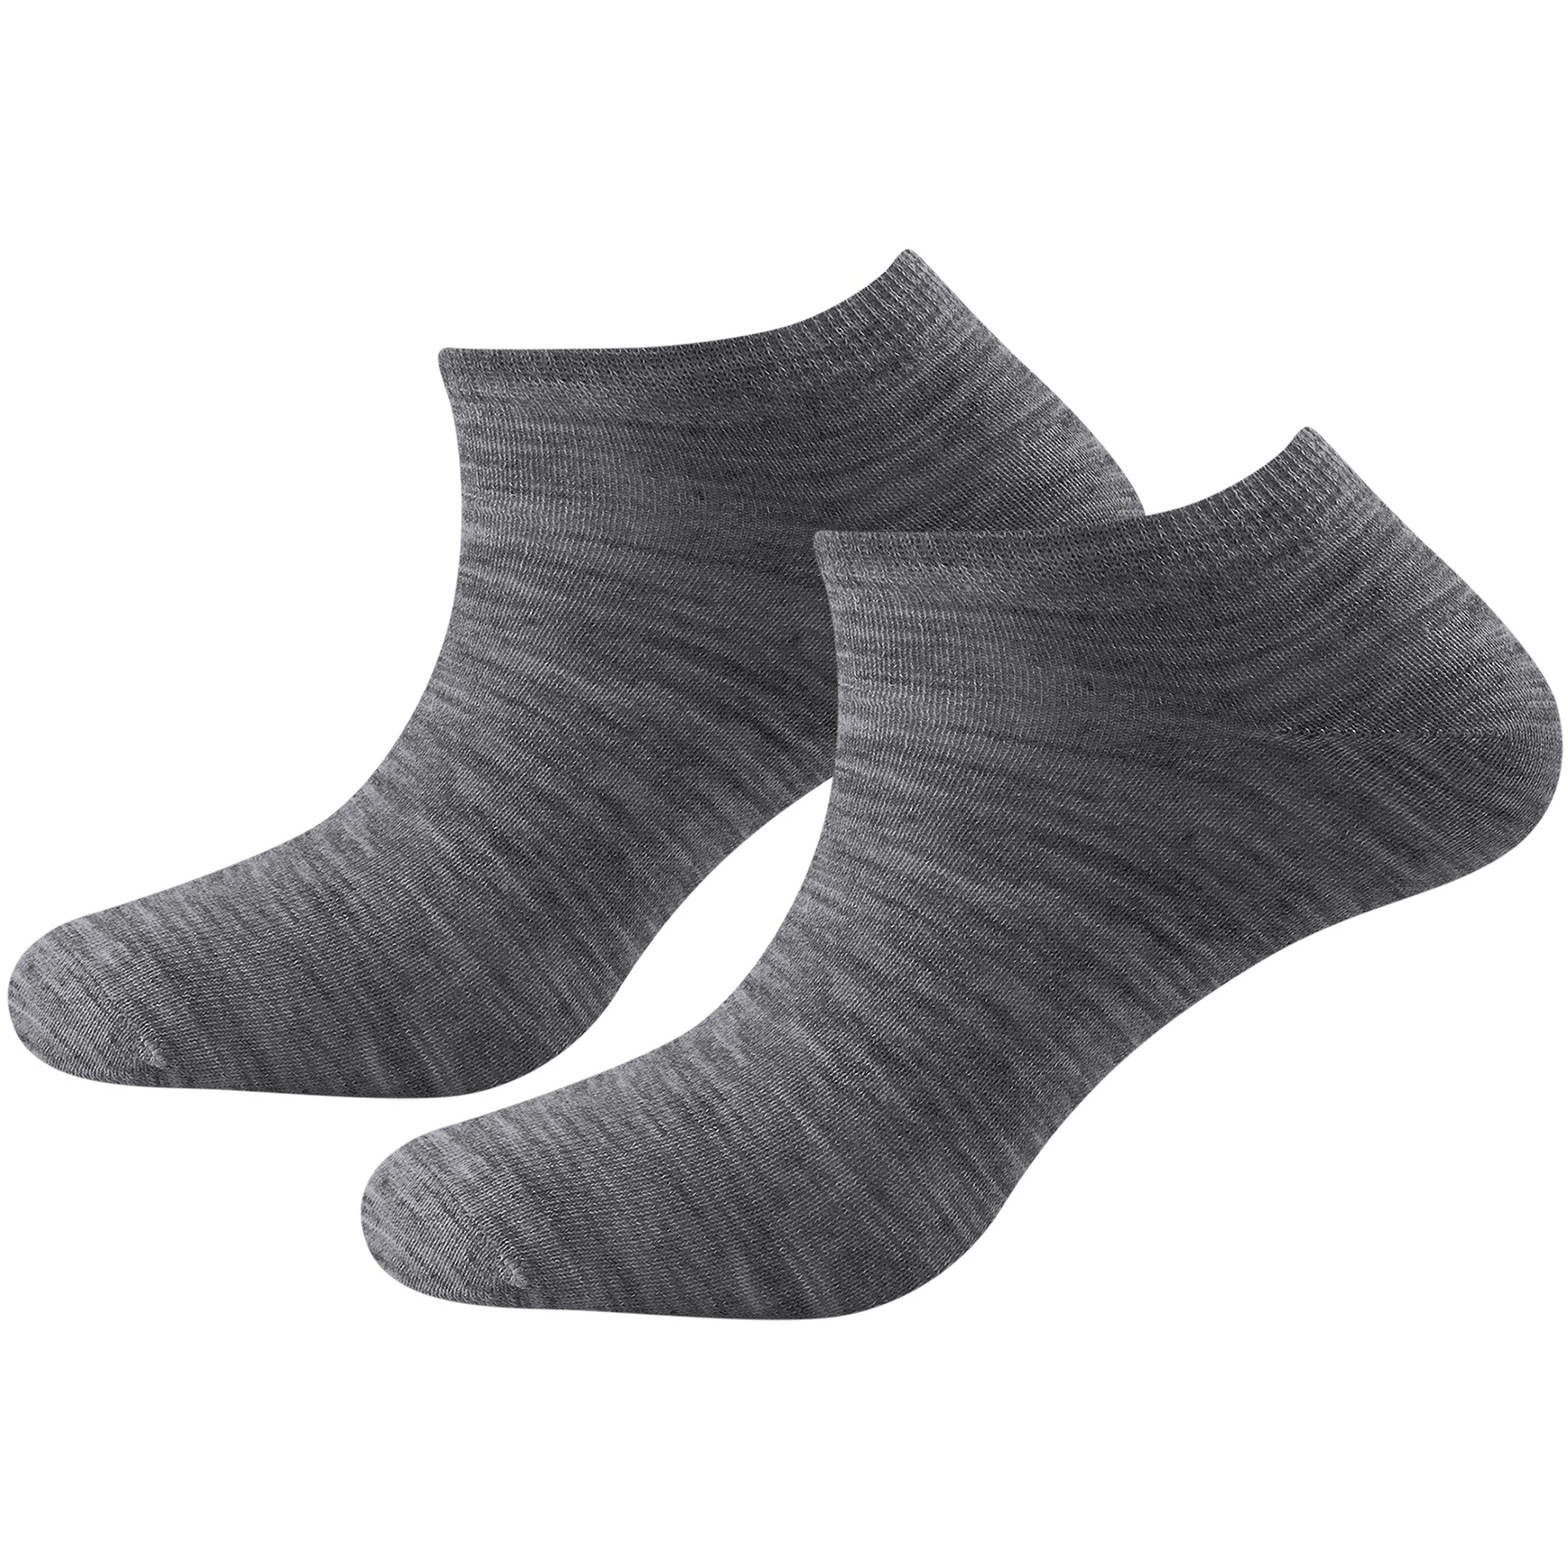 Produktbild von Devold Daily Shorty Merino Socken (2er-Pack) - 770 Grey Melange